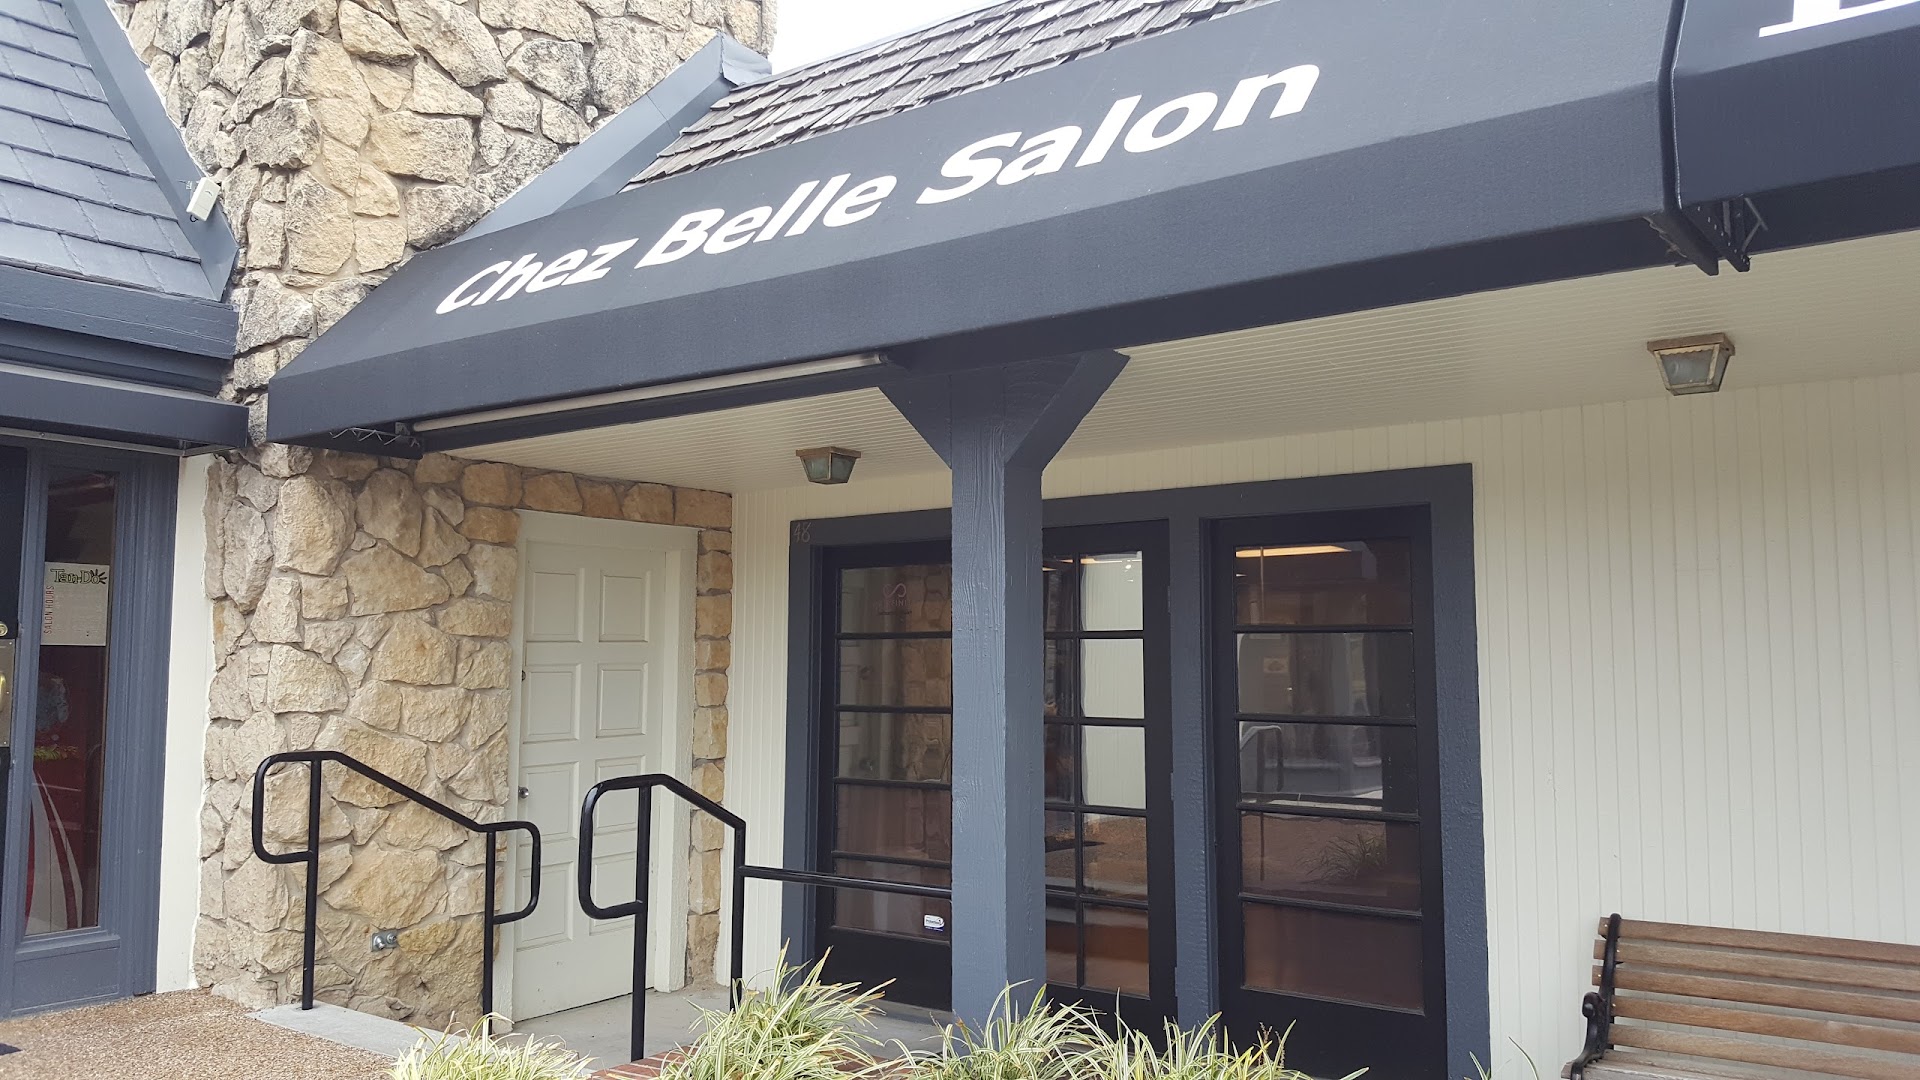 Chez Belle Salon, Inc